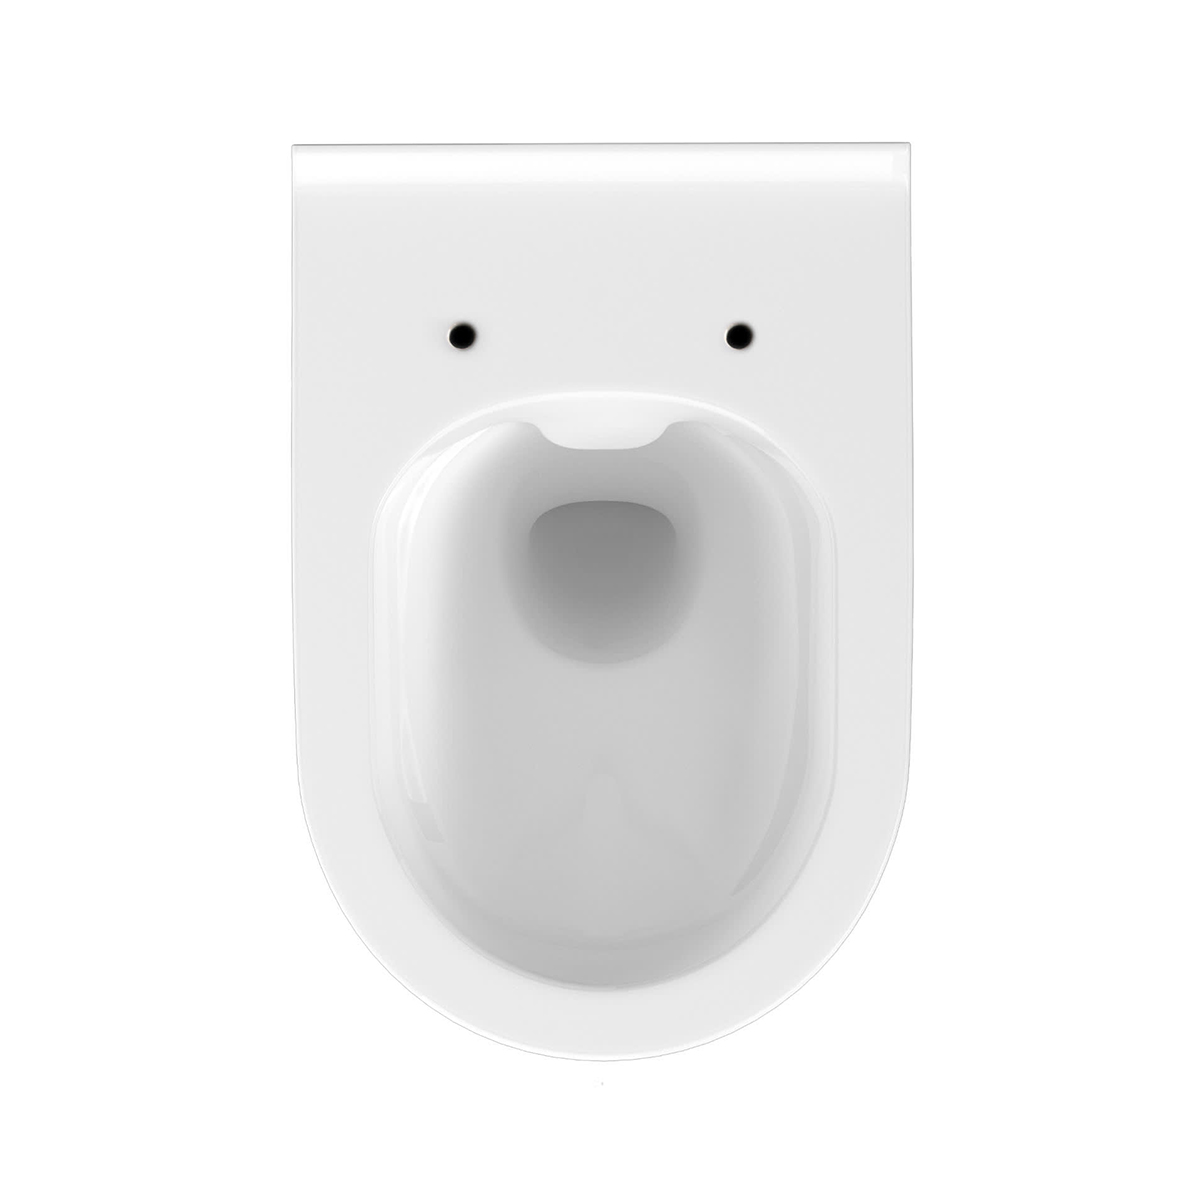 WC sospeso a cacciata Ubud ovale, sistema soft-close senza brida